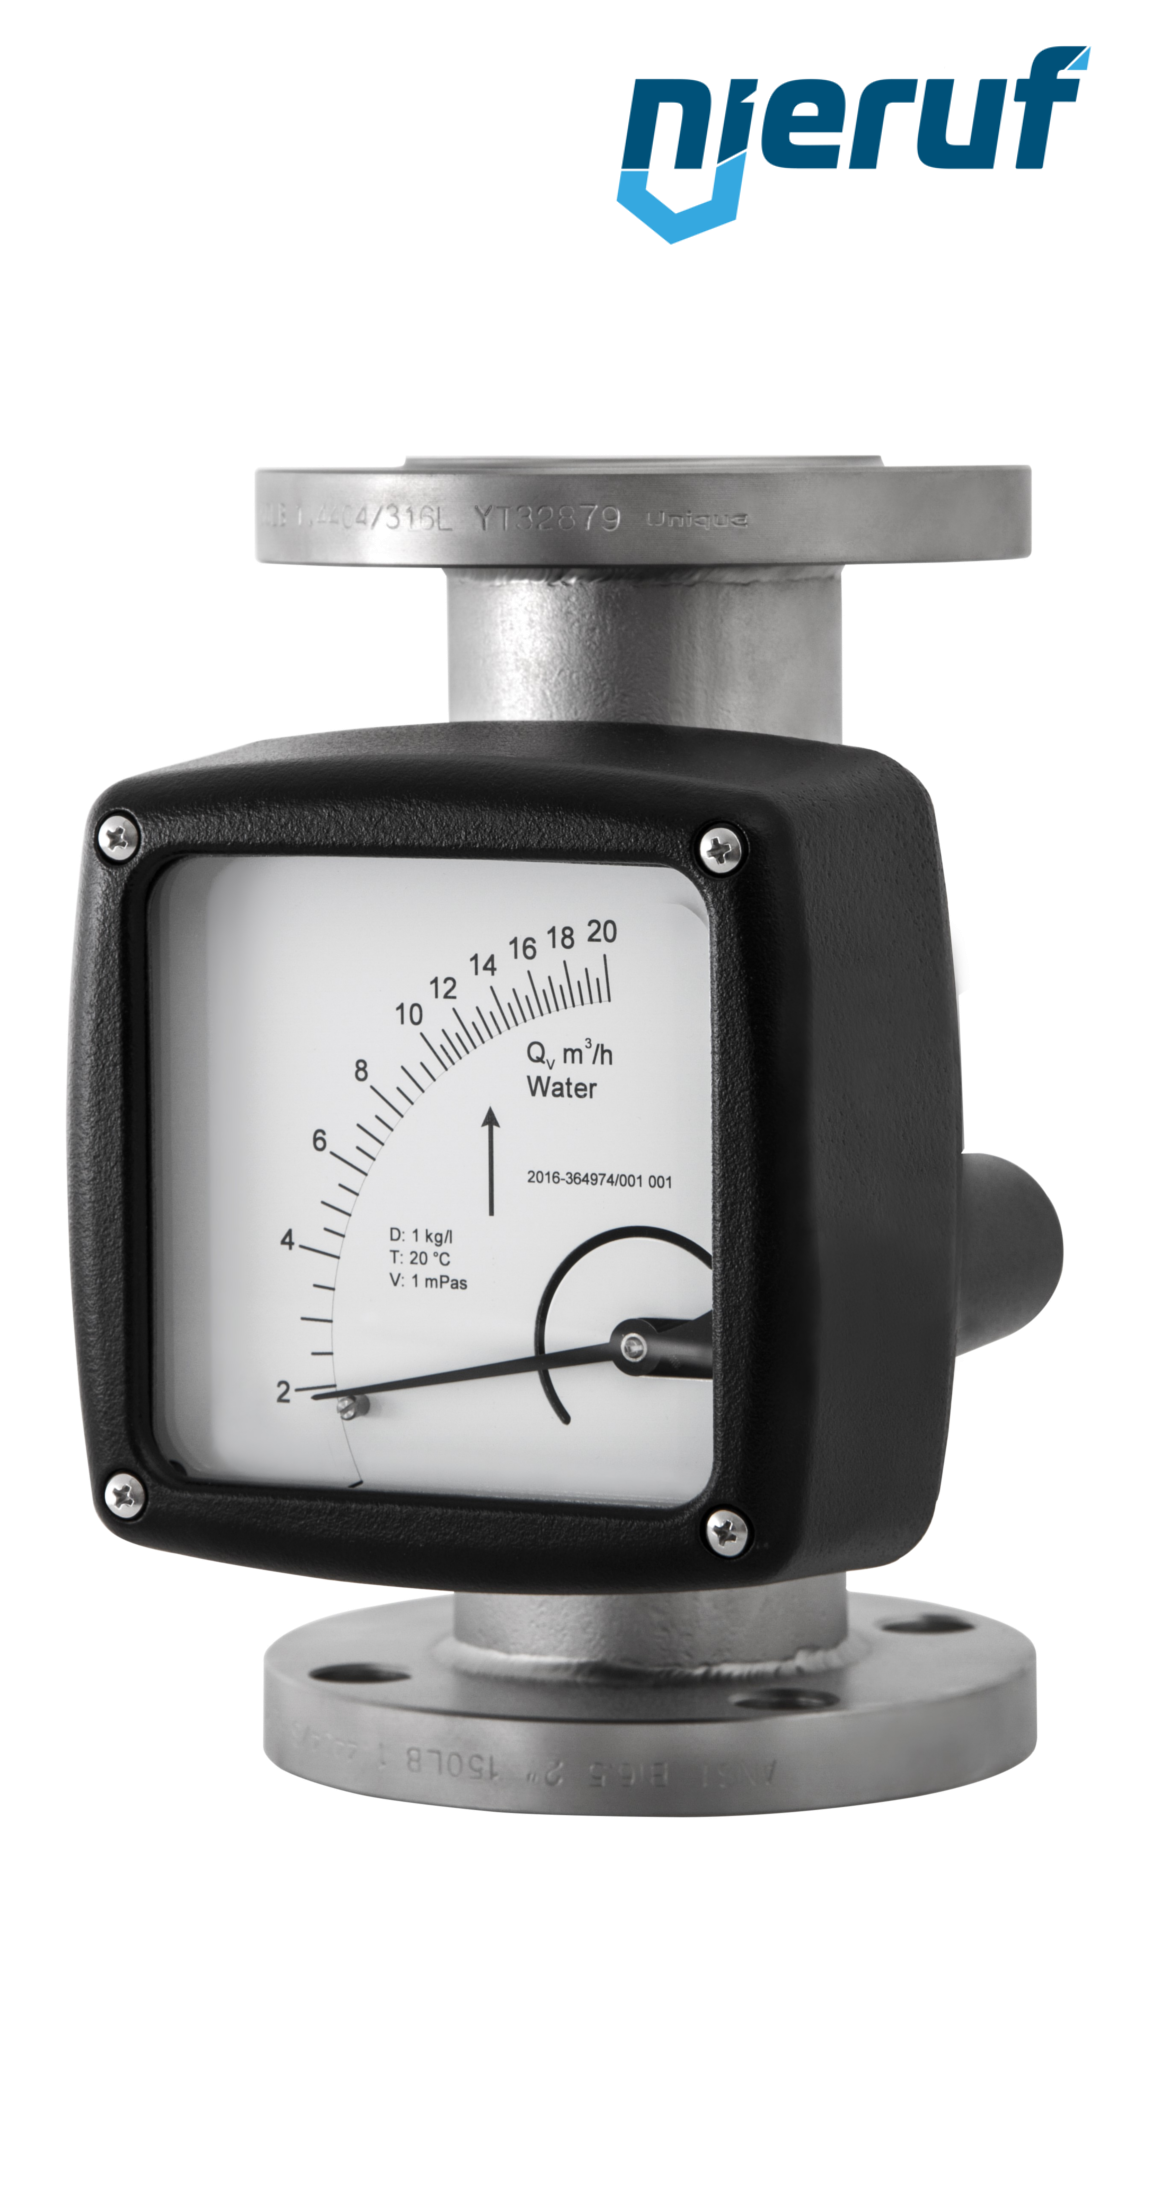 misuratore di flusso / rotametro completamente in metallo DN100-attacco 46,0 - 460,0 l/h tubo DN50 aria